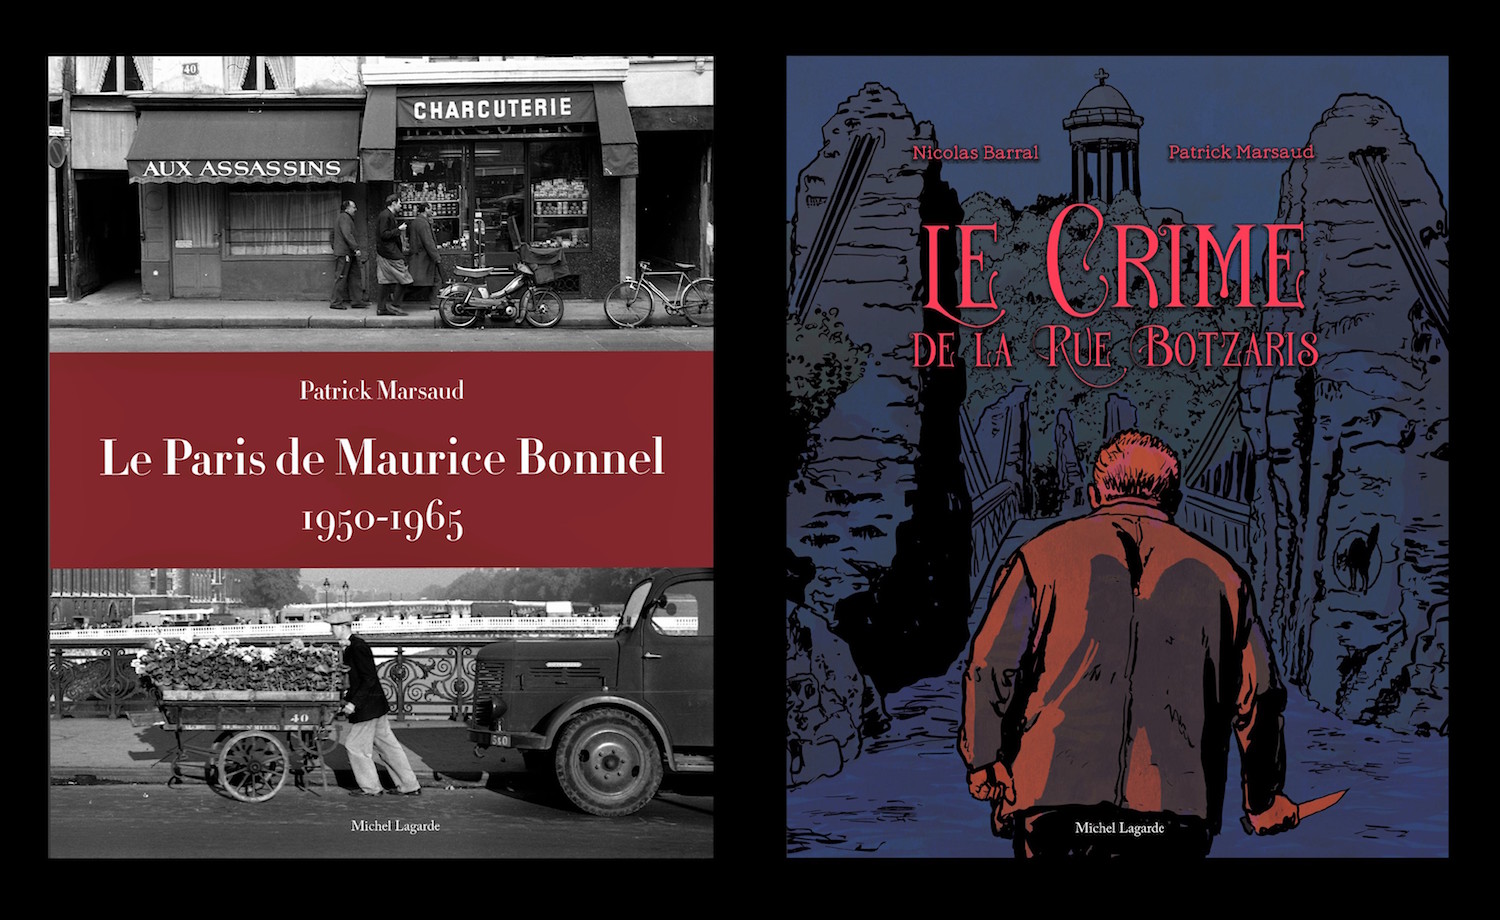 Deux nouveaux livres de Patrick Marsaud :
Le Paris de Maurice Bonnel
Le crime de la rue Botzaris | En précommande sur kisskissbankbank